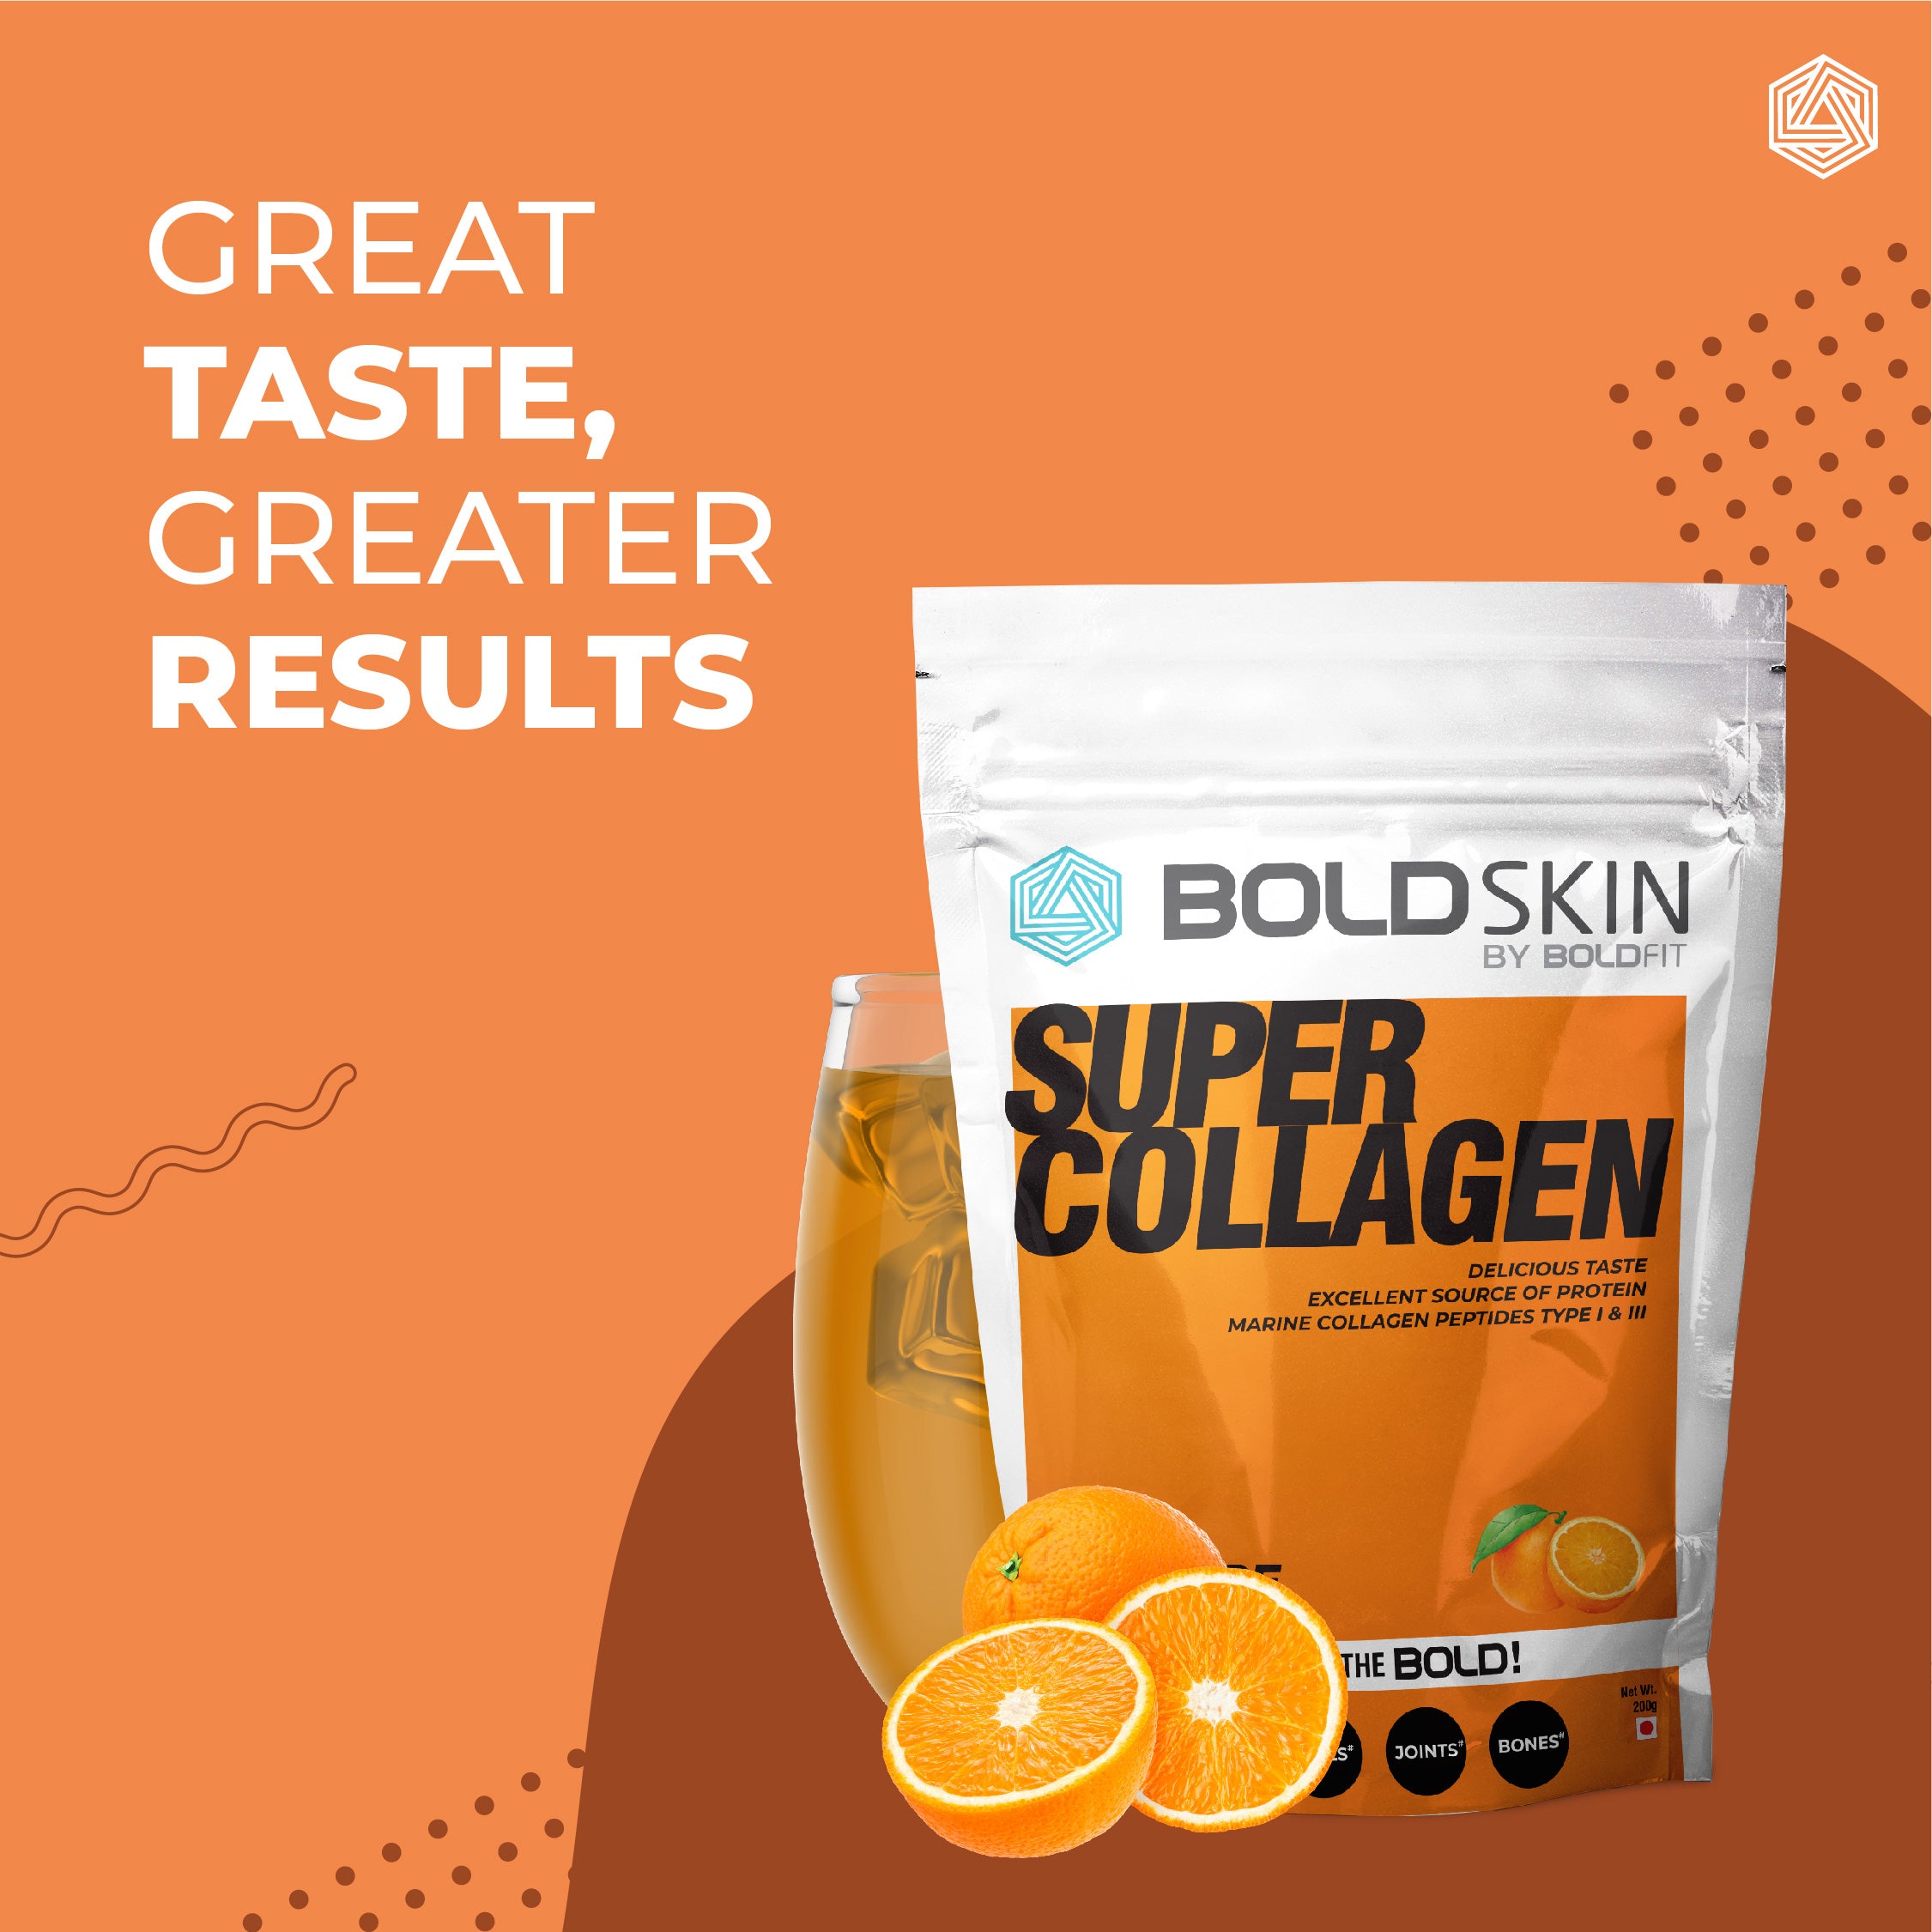 Boldskin Super Collagen for Men and Women